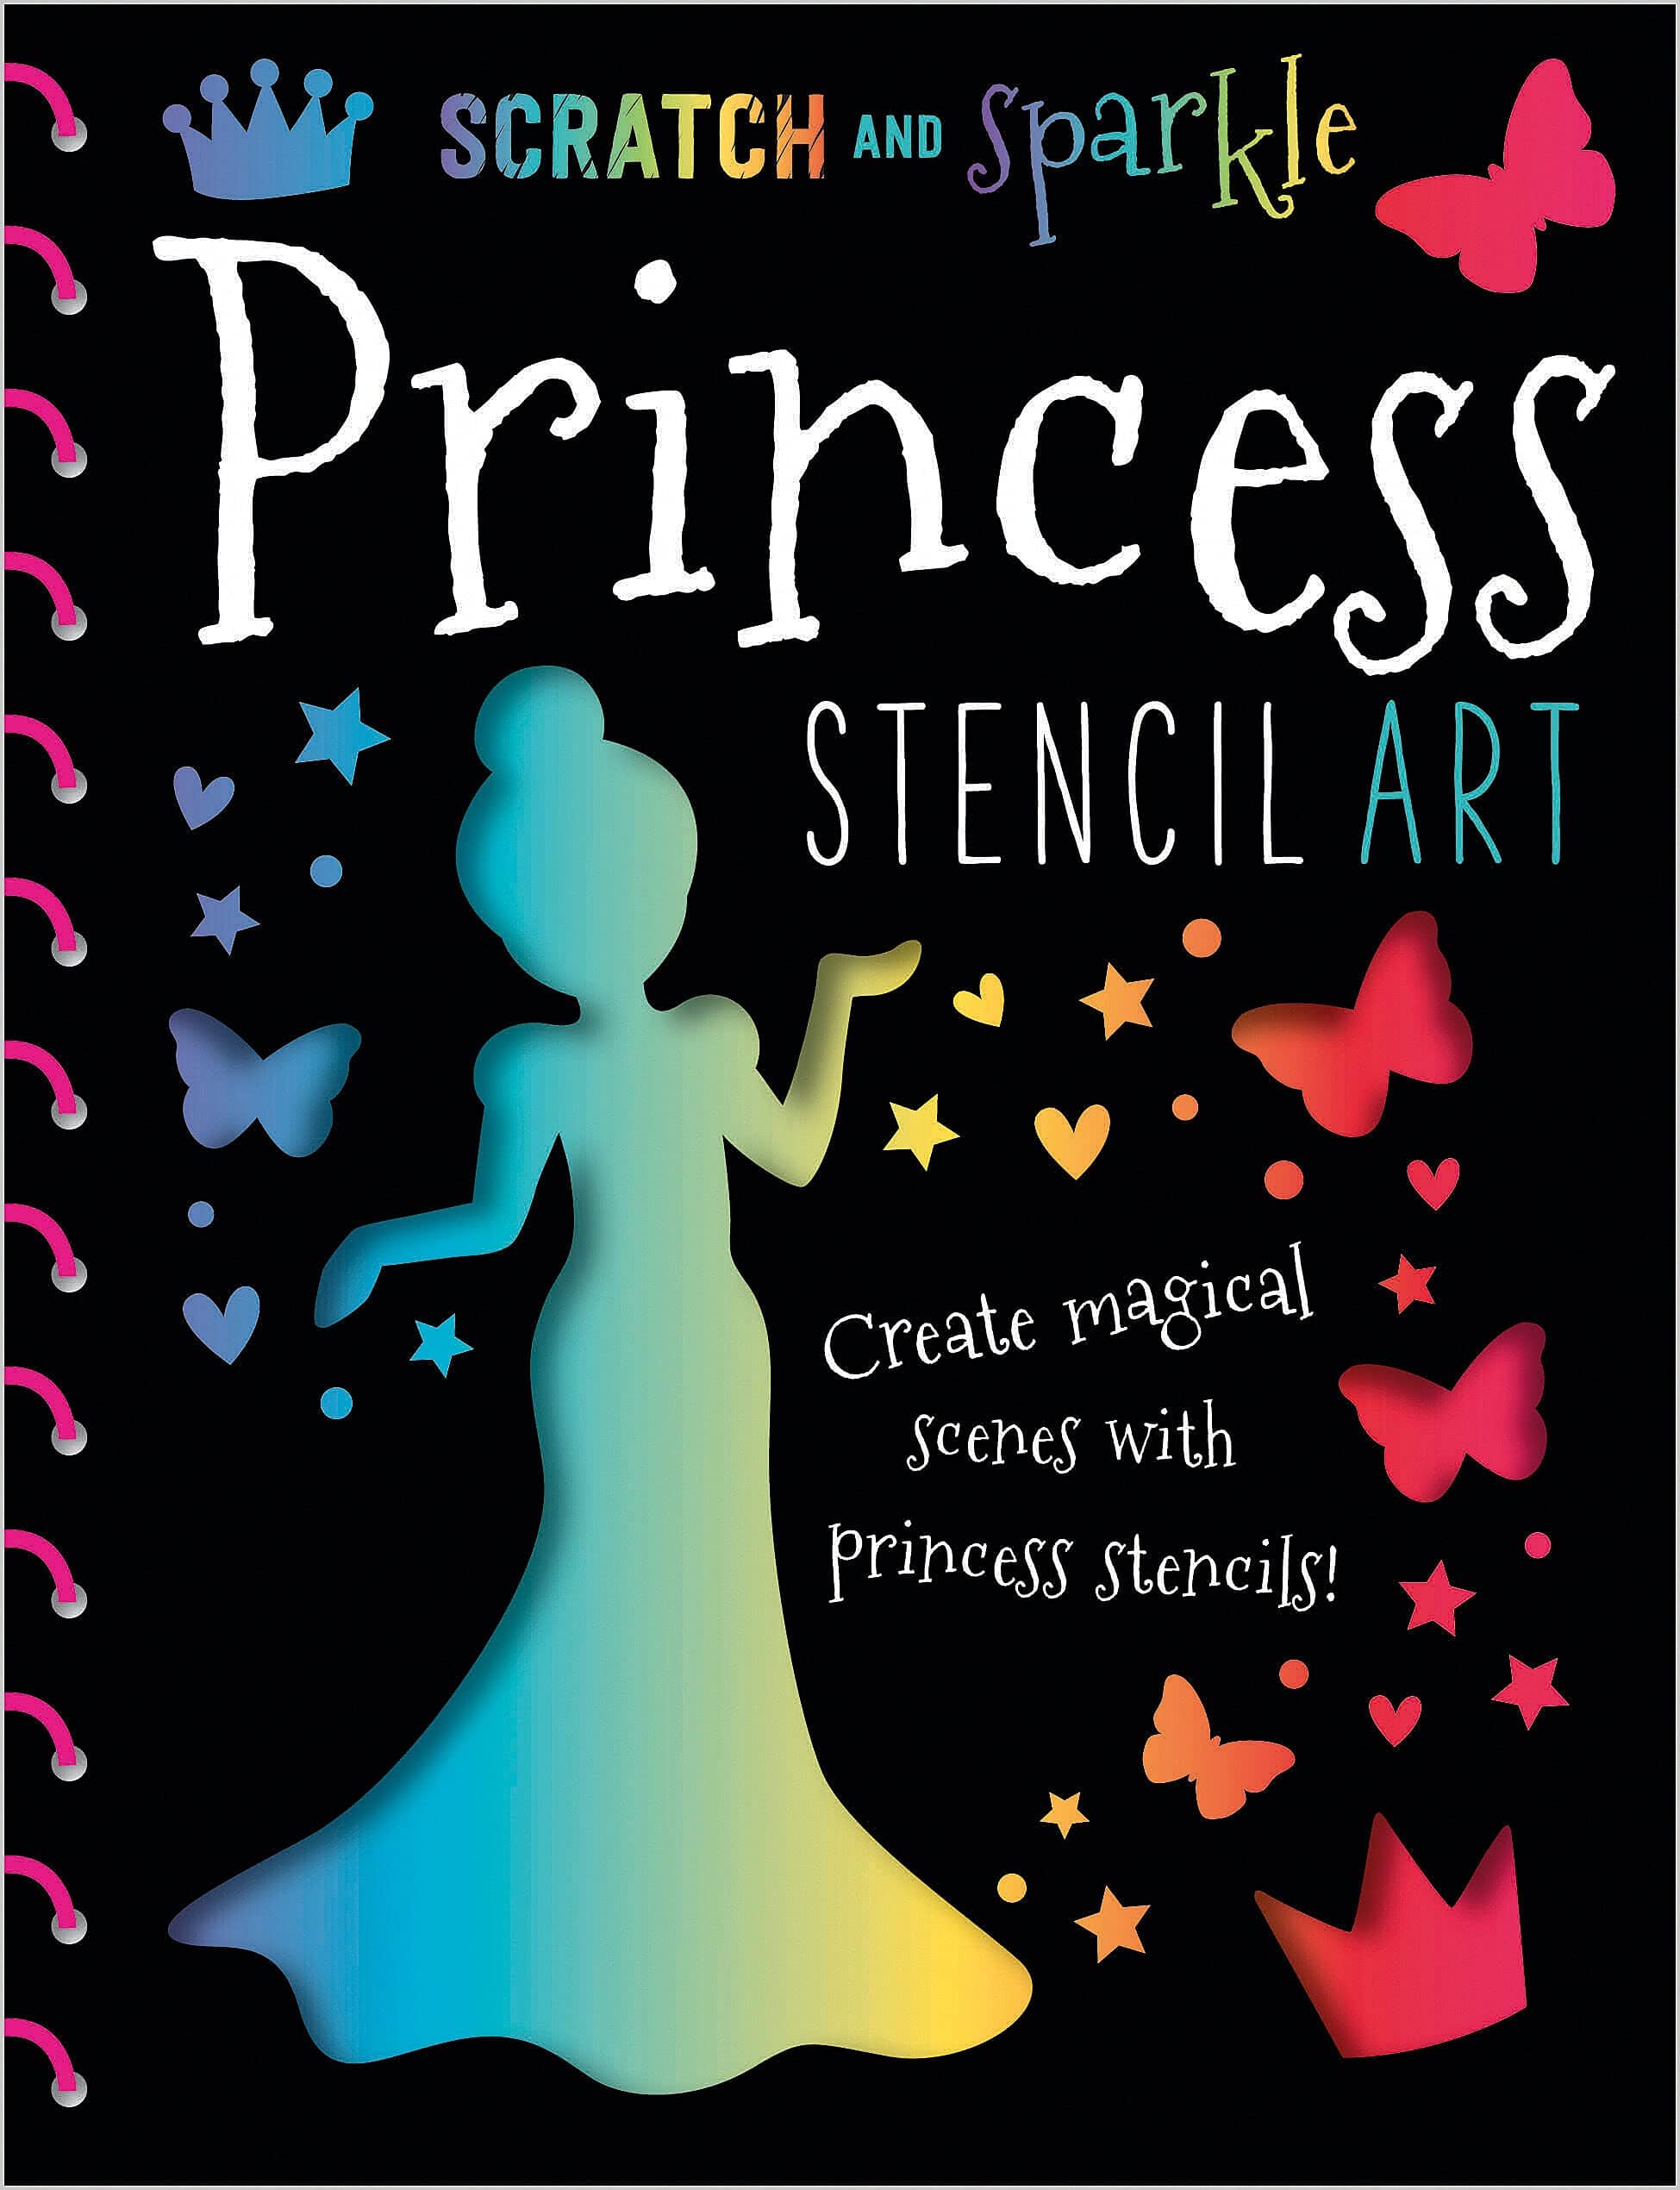 https://marissasbooks.com/cdn/shop/files/marissasbooksandgifts-9781785980732-scratch-and-sparkle-princess-stencil-art-37473800028359_1949x.jpg?v=1682549163